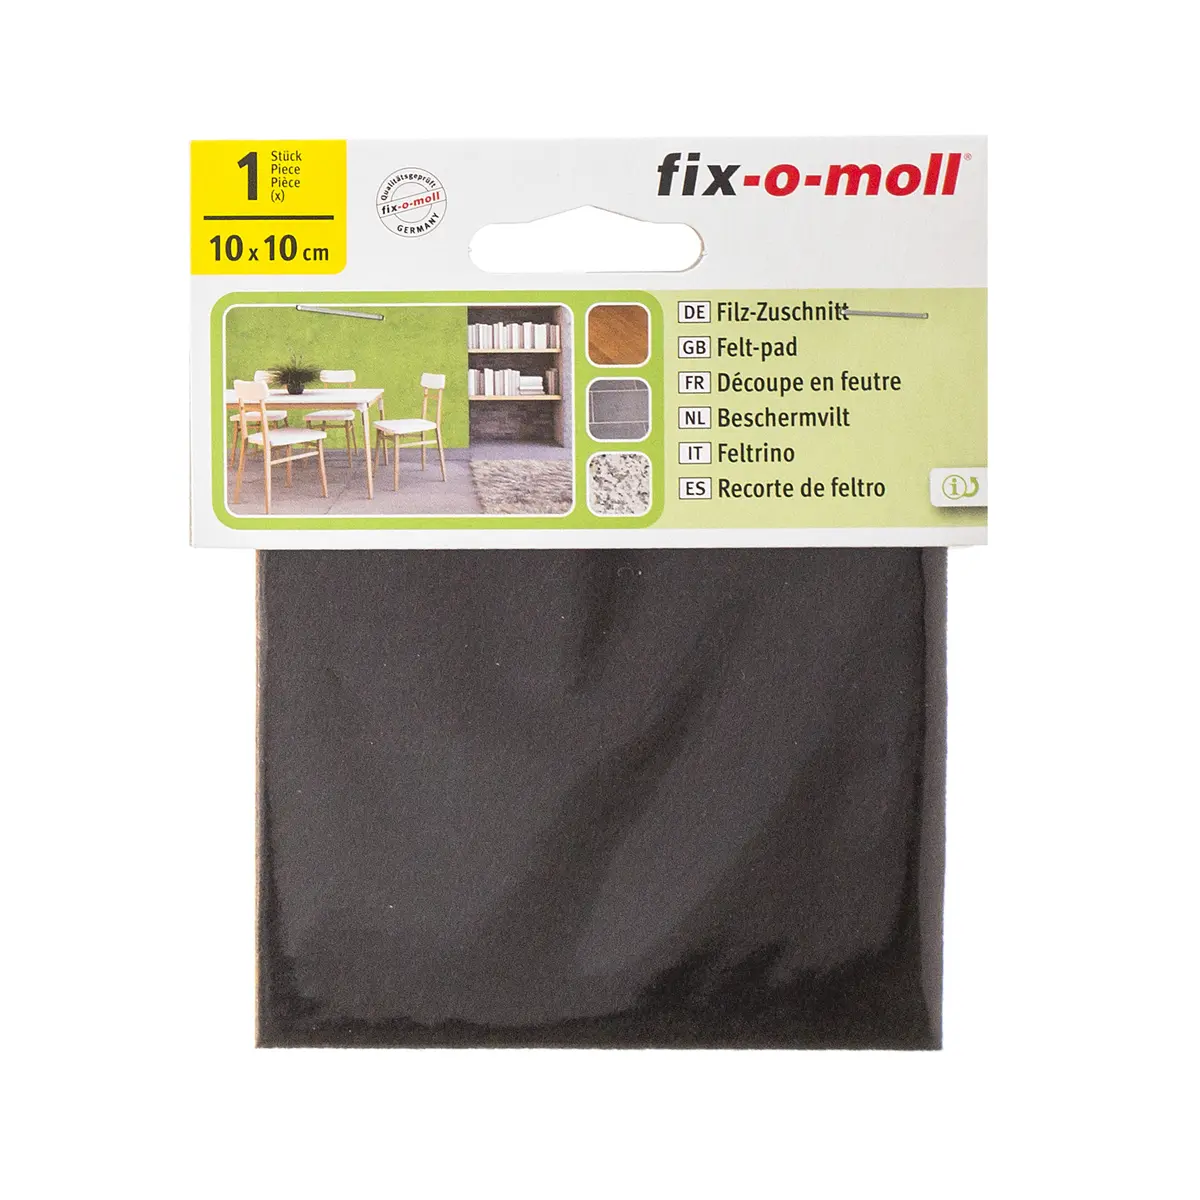 Пластина фетровая самоклеящаяся коричневая 100*100 мм (упаковка, 1шт) Fix-o-moll